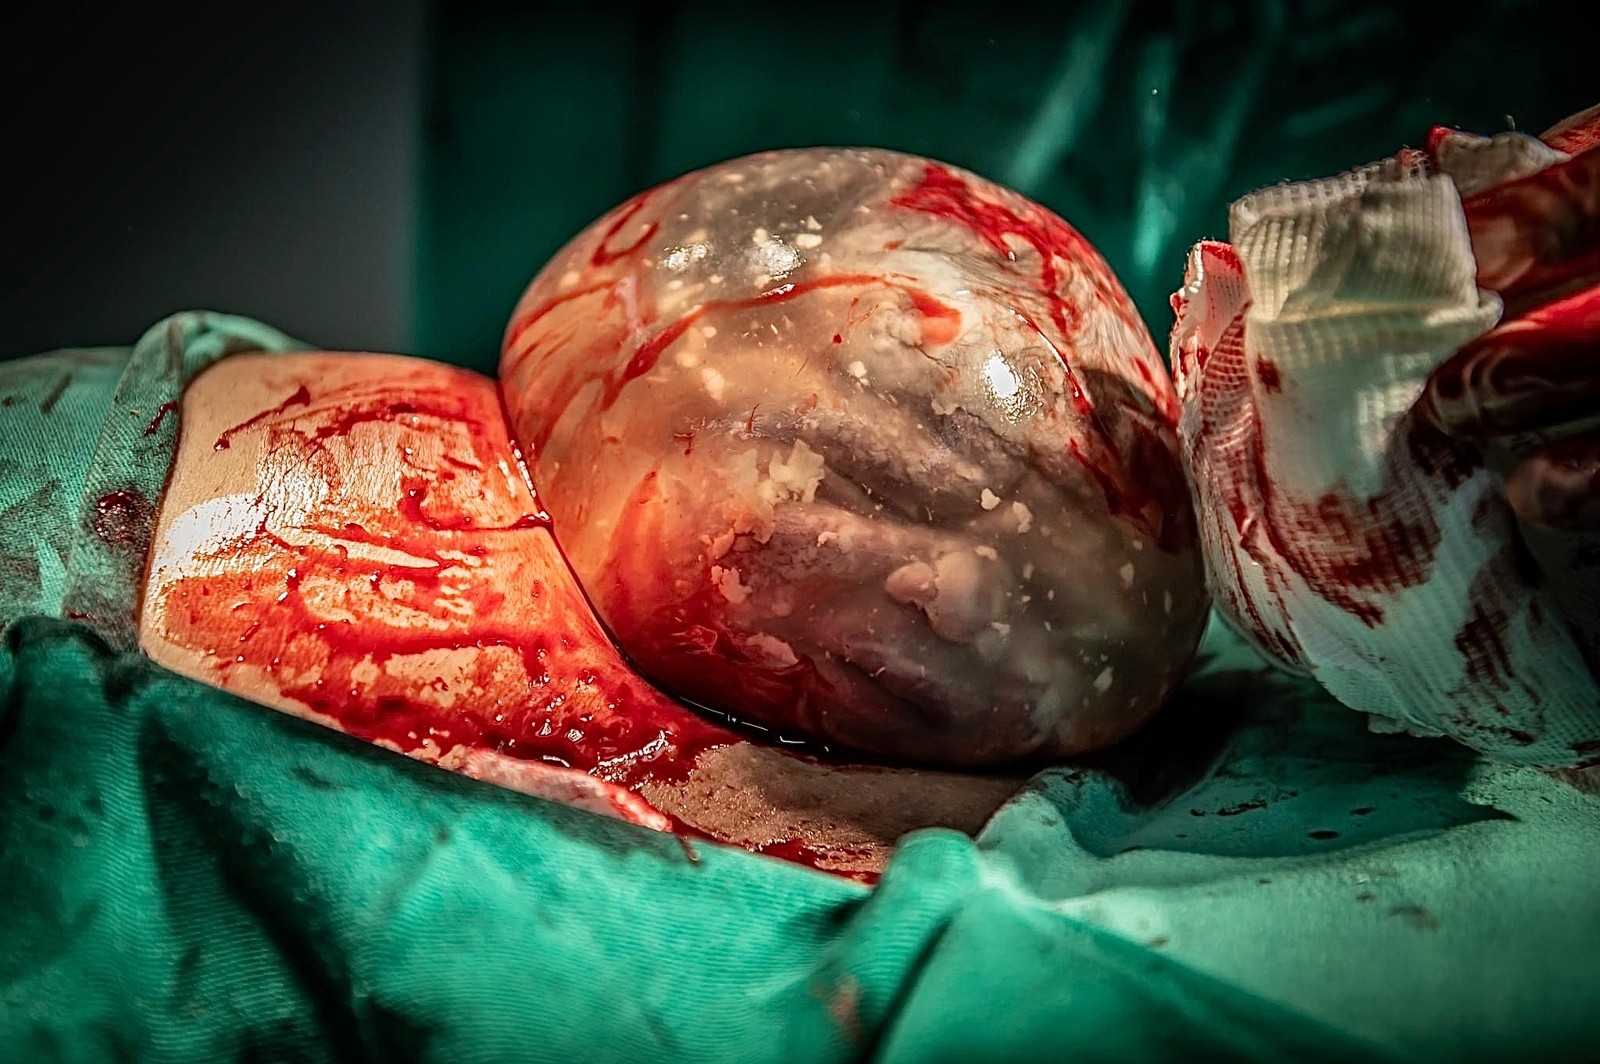 Fotgrafa registra quatro raros partos de bebs empelicados em menos de 2 anos: ?Me sinto muito privilegiada'